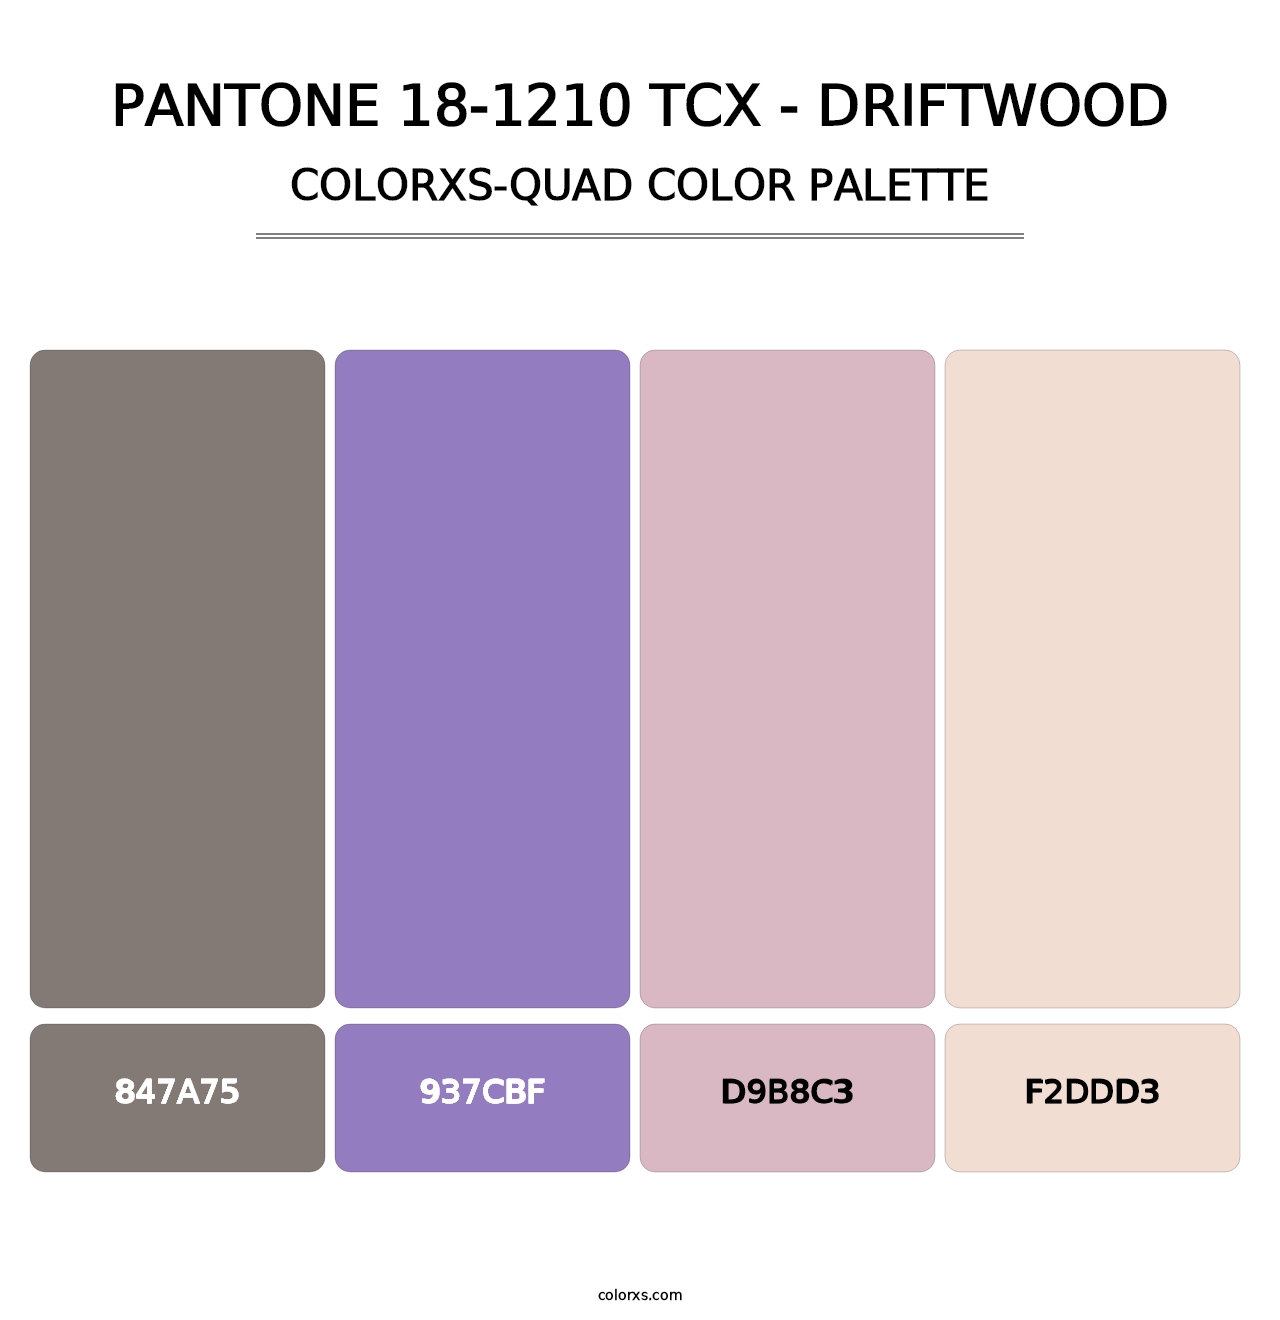 PANTONE 18-1210 TCX - Driftwood - Colorxs Quad Palette